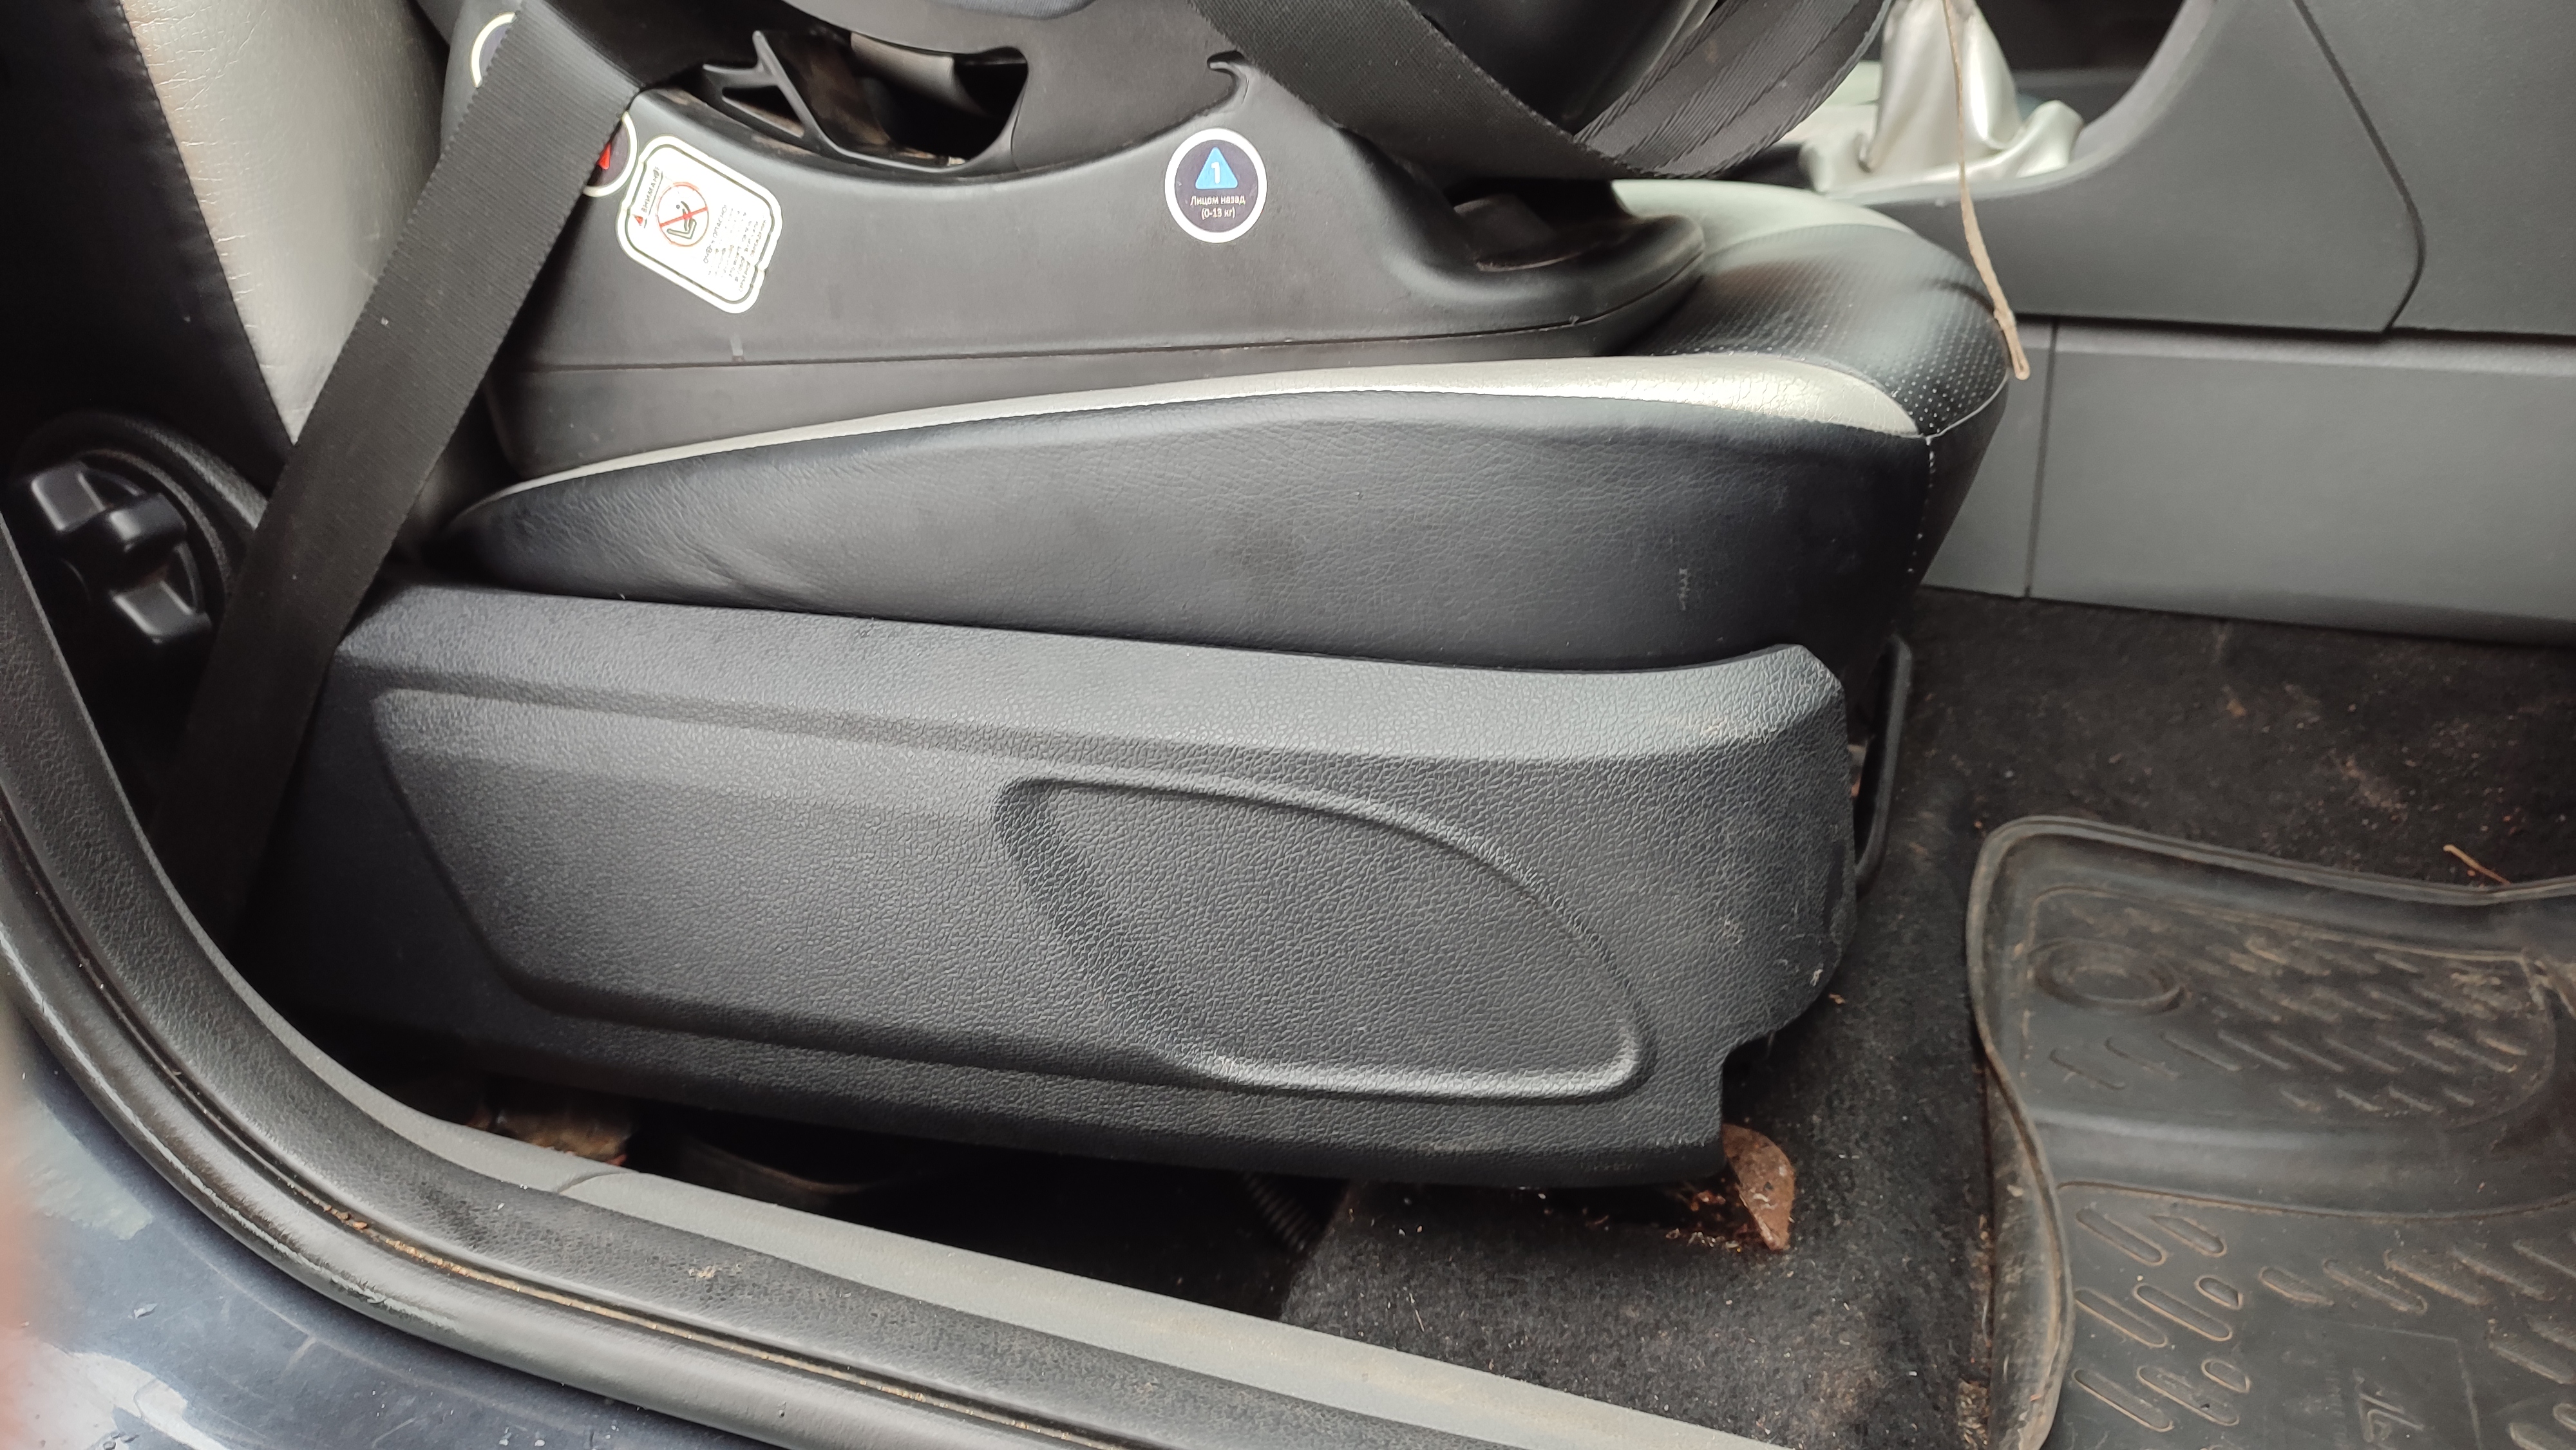 Перед тем как покупать,попробуй отремонтировать! Ремонт накладки пассажирского сидения Форд Фокус 2.